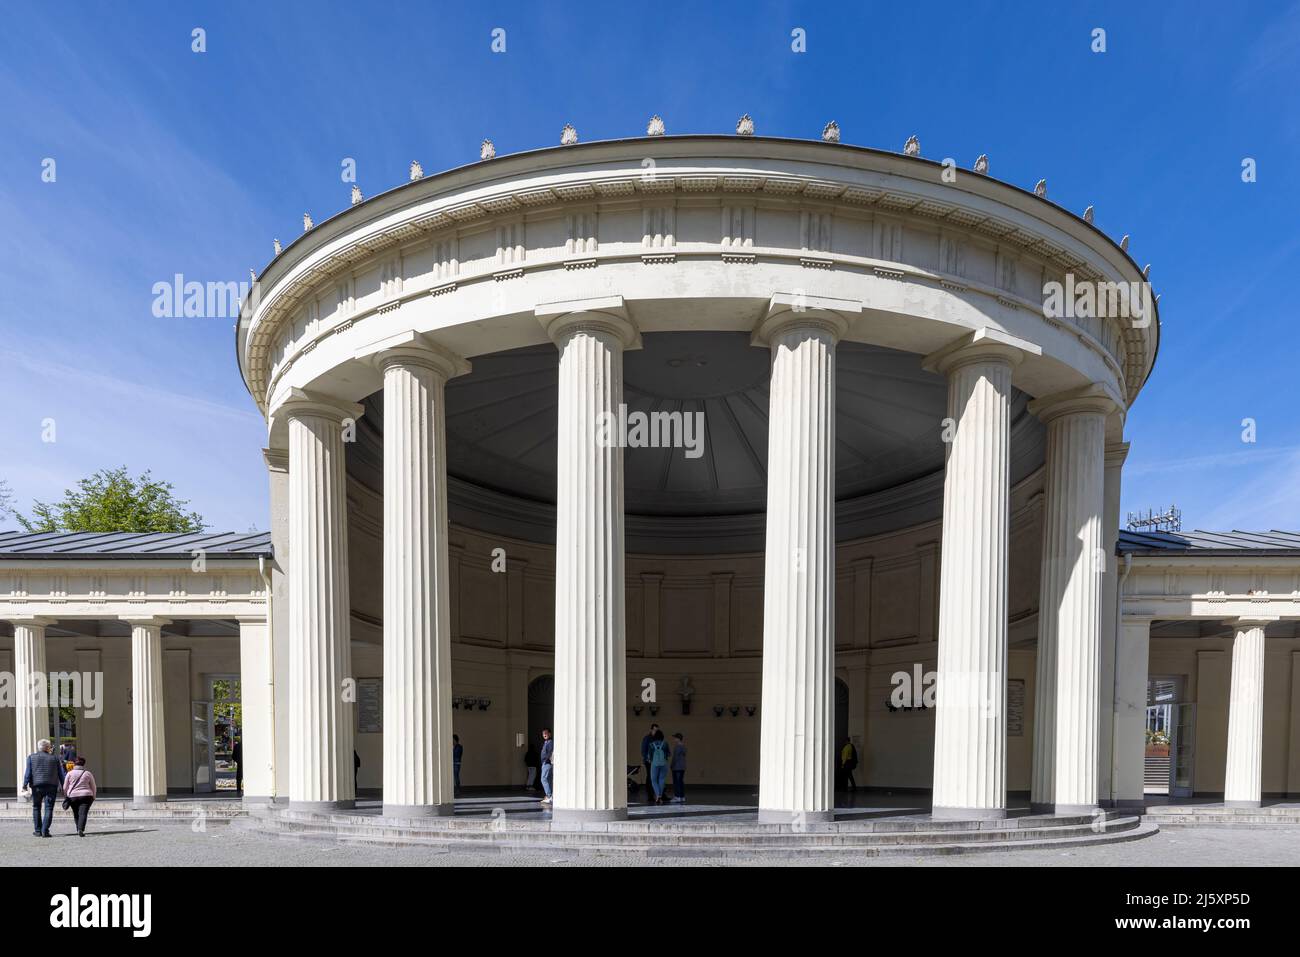 Les sources Elisenbrunnen apportent de l'eau potable thermale chaude dans les halls du bâtiment classique d'Aix-la-Chapelle, en Allemagne Banque D'Images